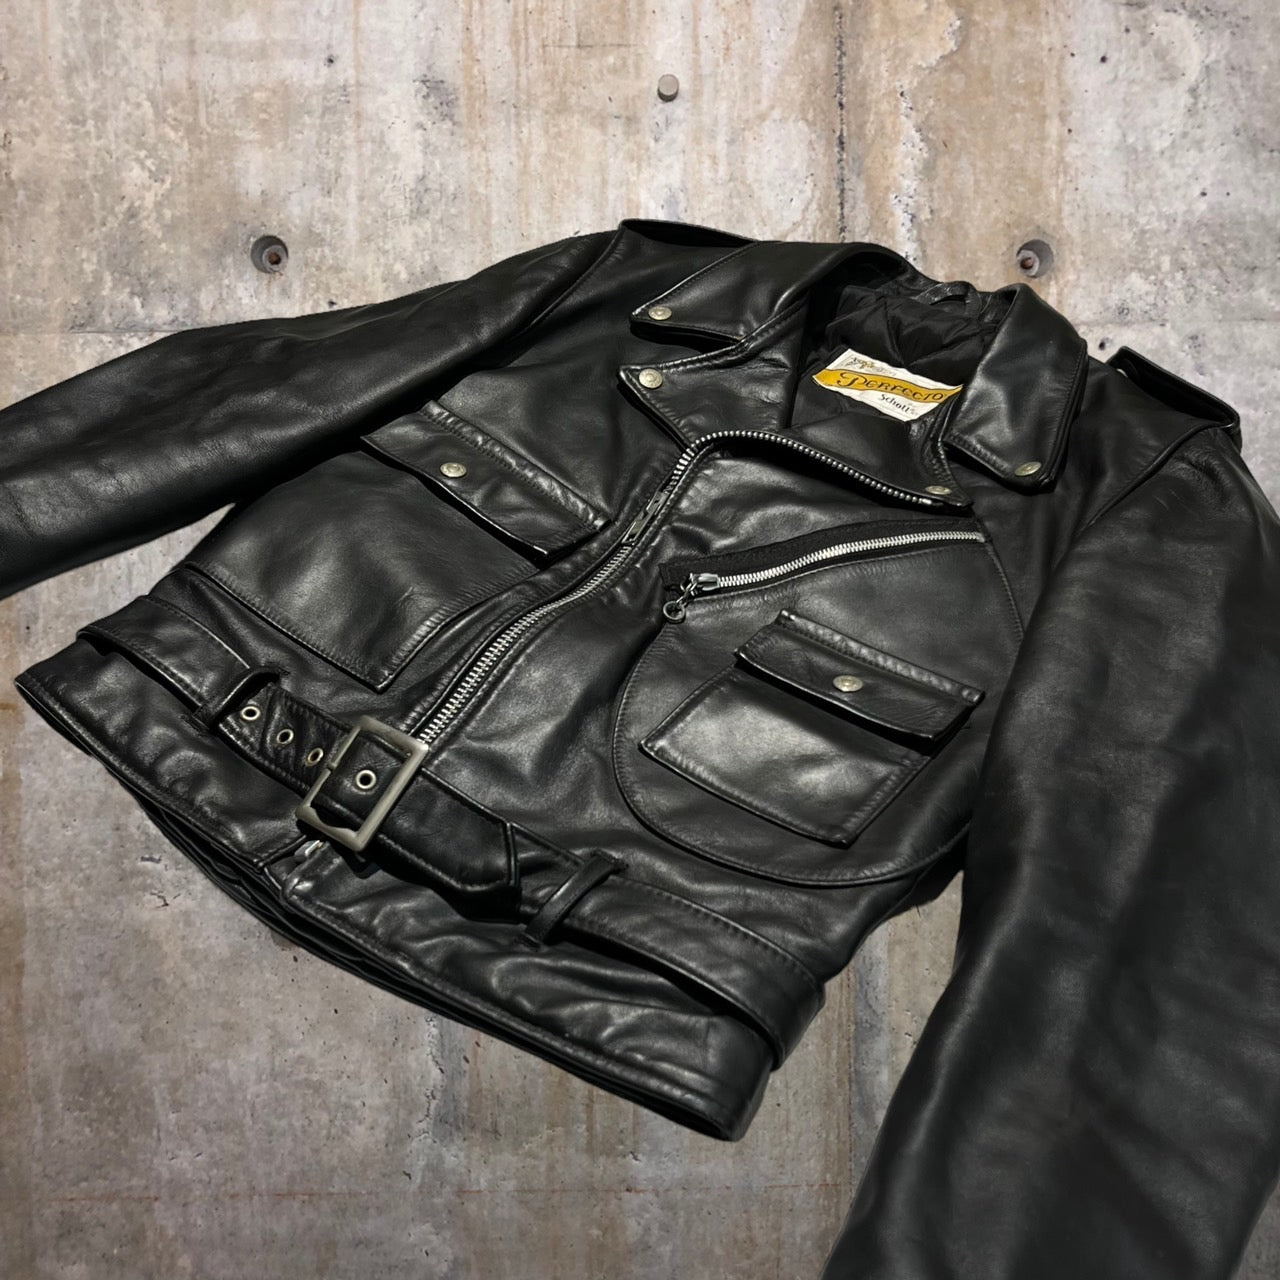 SCHOTT(ショット)希少モデル 80~90's double leather jacket/ダブルレザージャケット lot 1025  36(Sサイズ程度) ブラック バイカータグ後期 ライダースジャケット